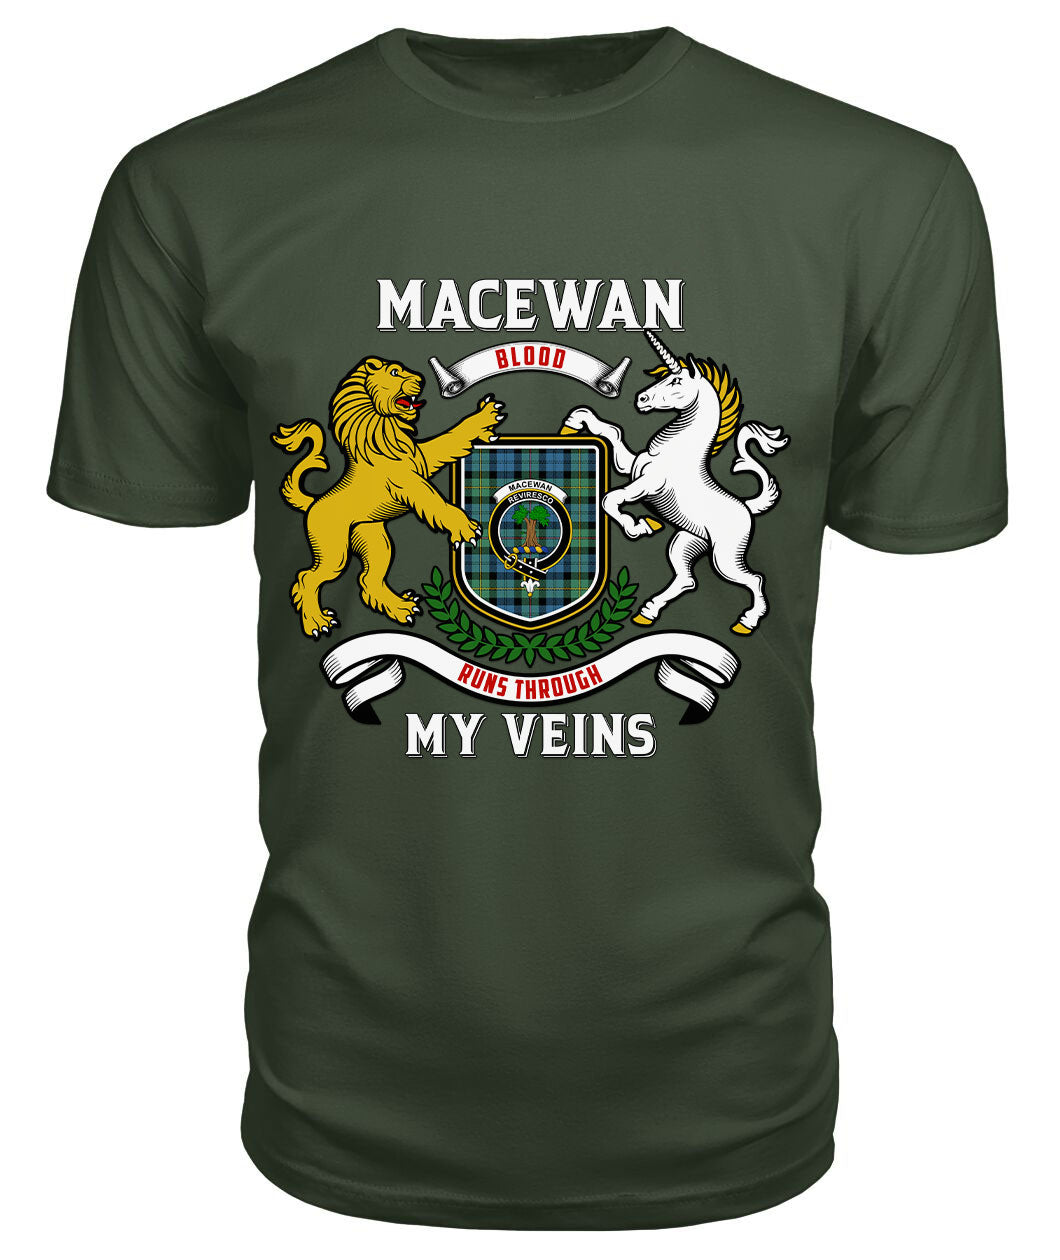 MacEwan Ancient Tartan Crest 2D T-shirt - Blood Runs Through My Veins Style